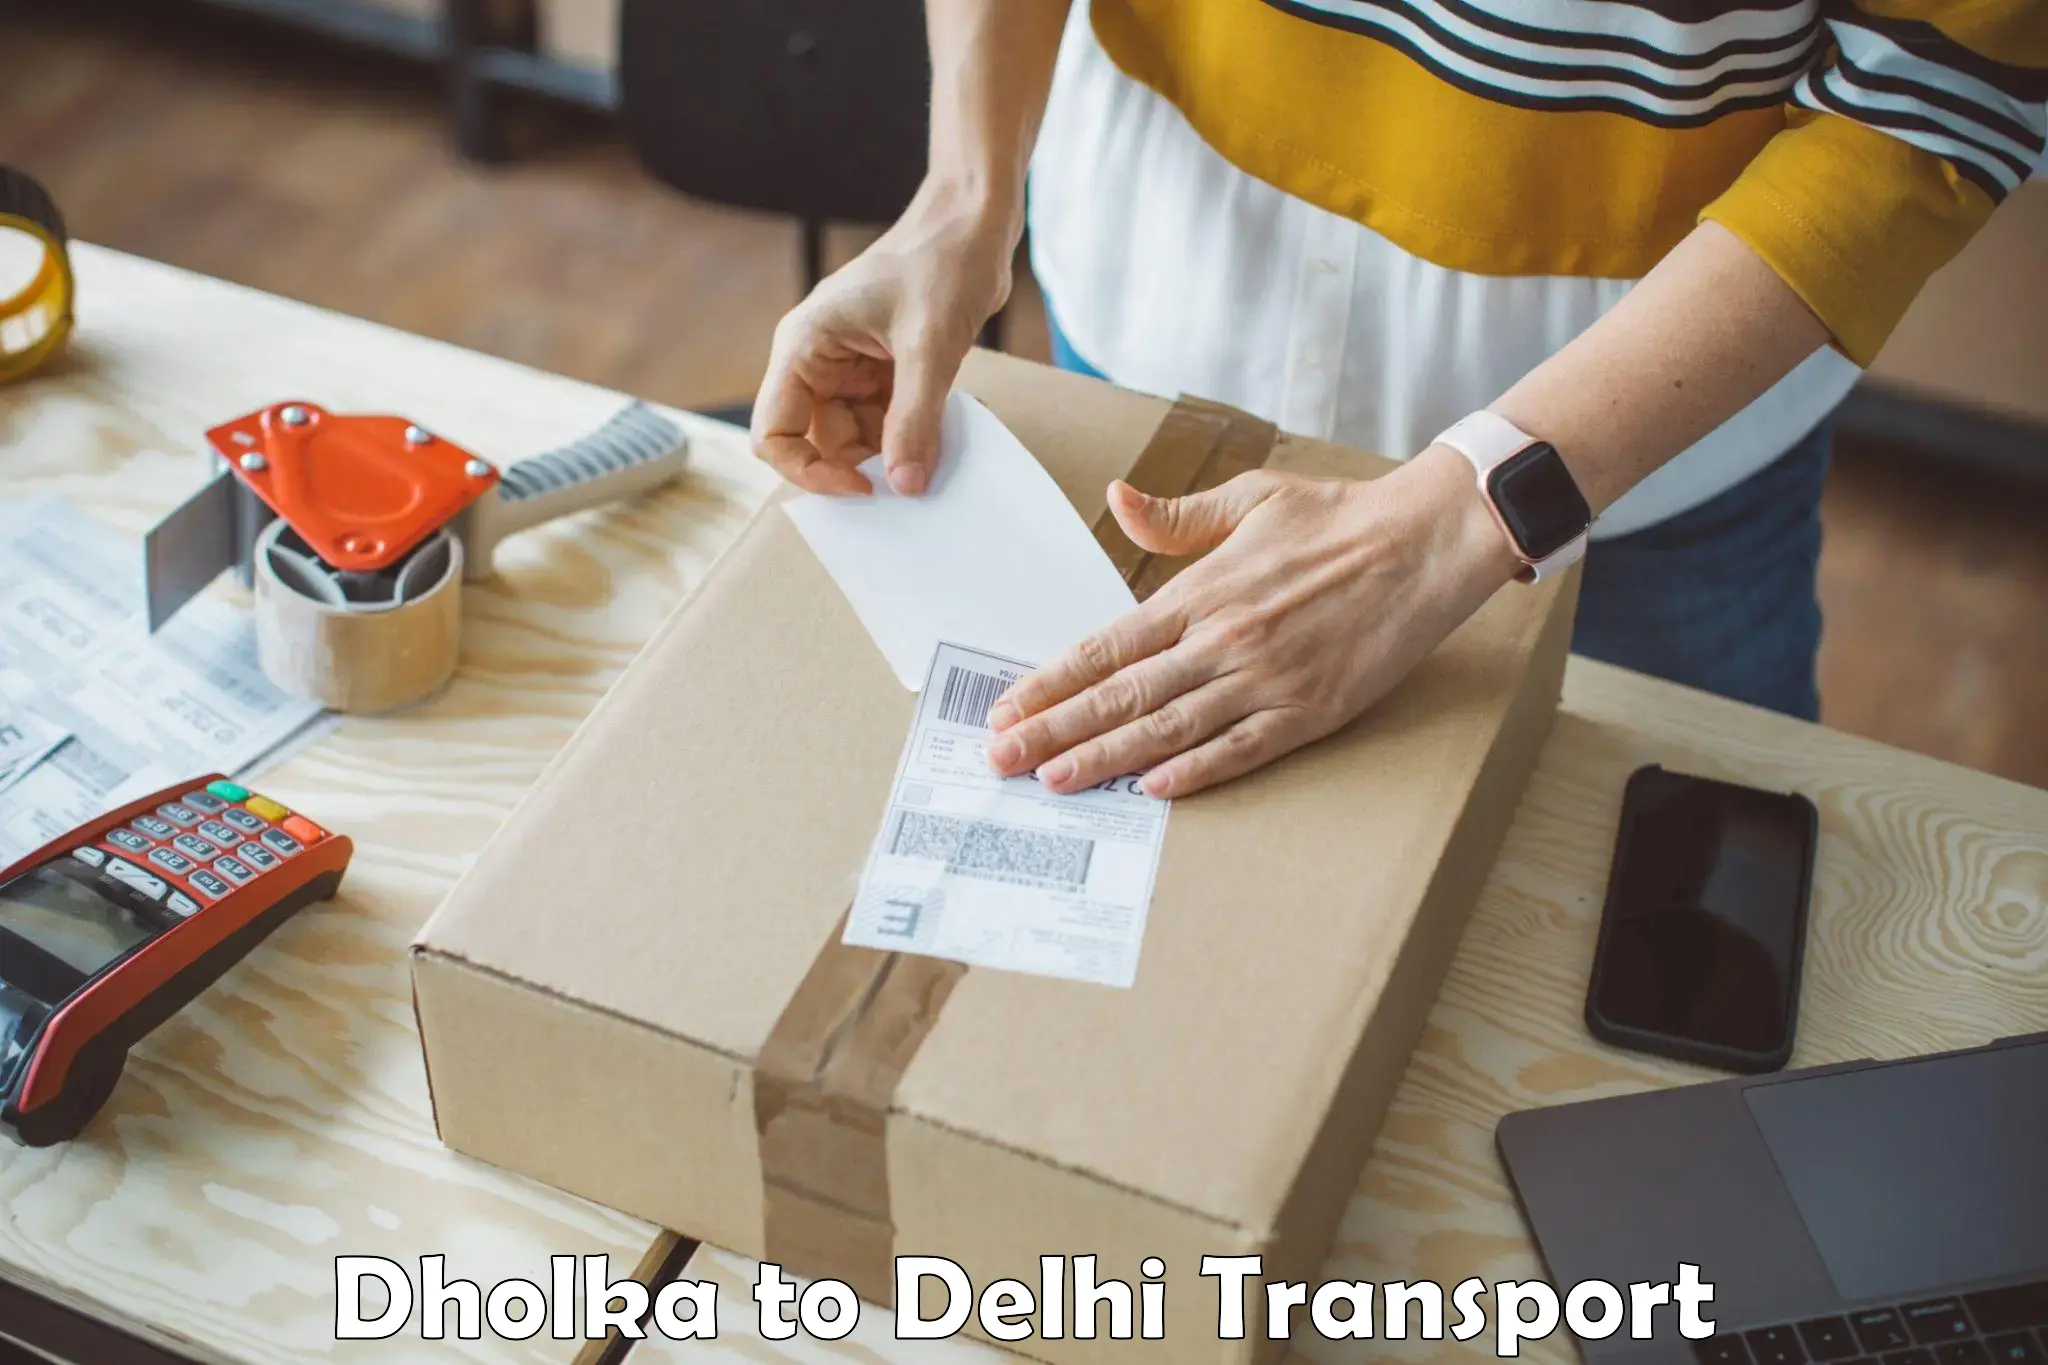 Online transport service Dholka to Indraprastha